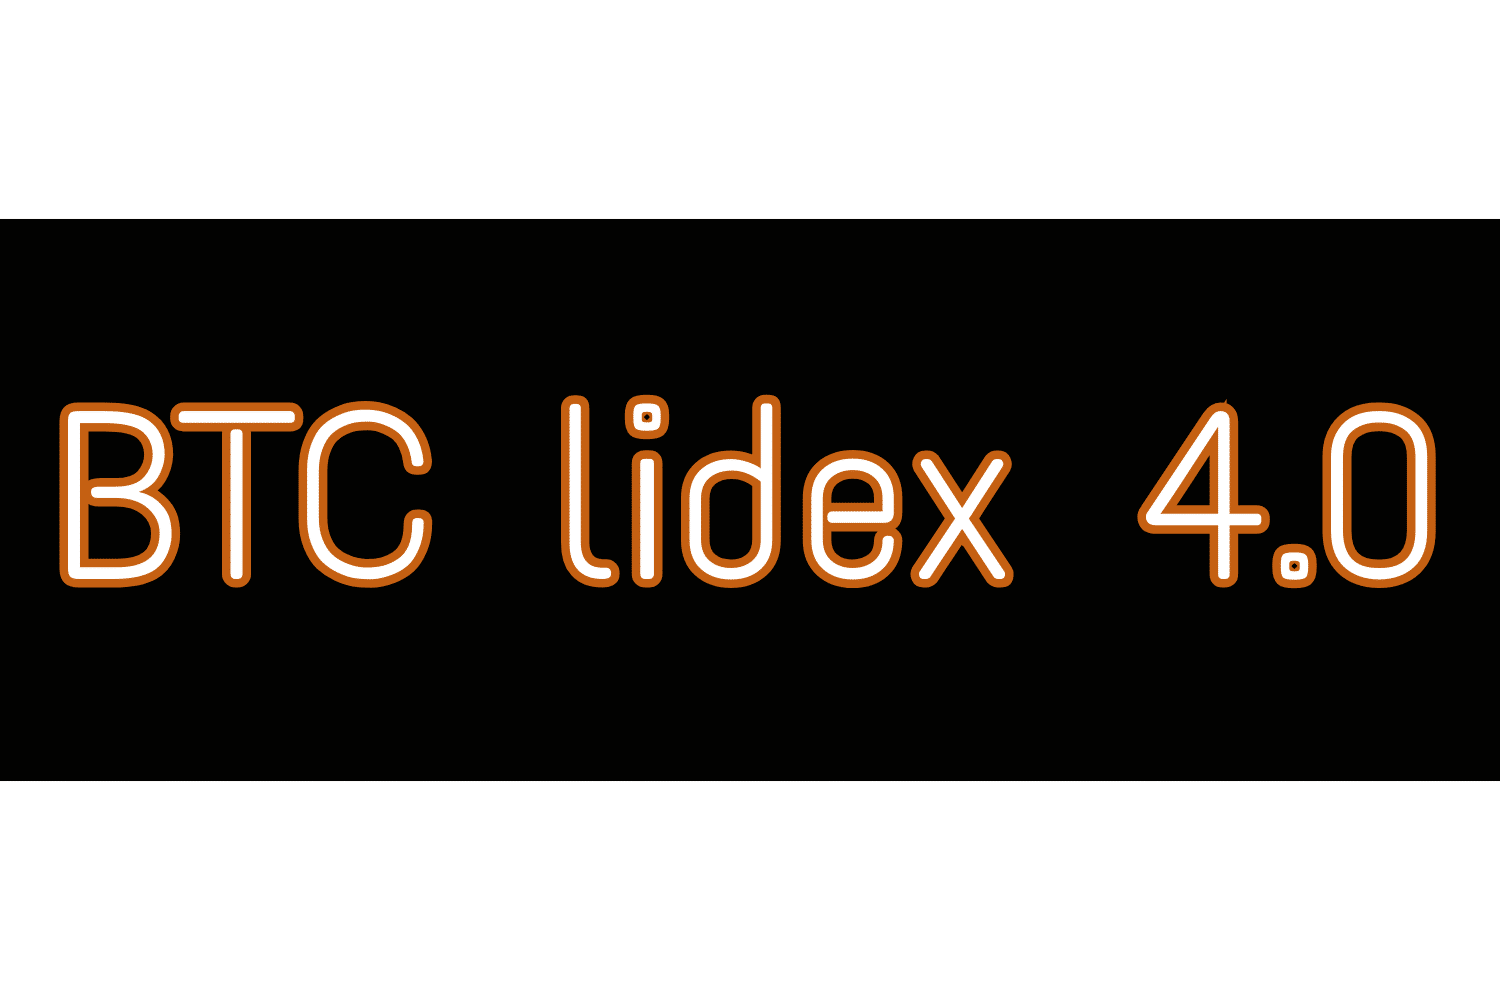 Inscrição Lidex de 4,0 bits